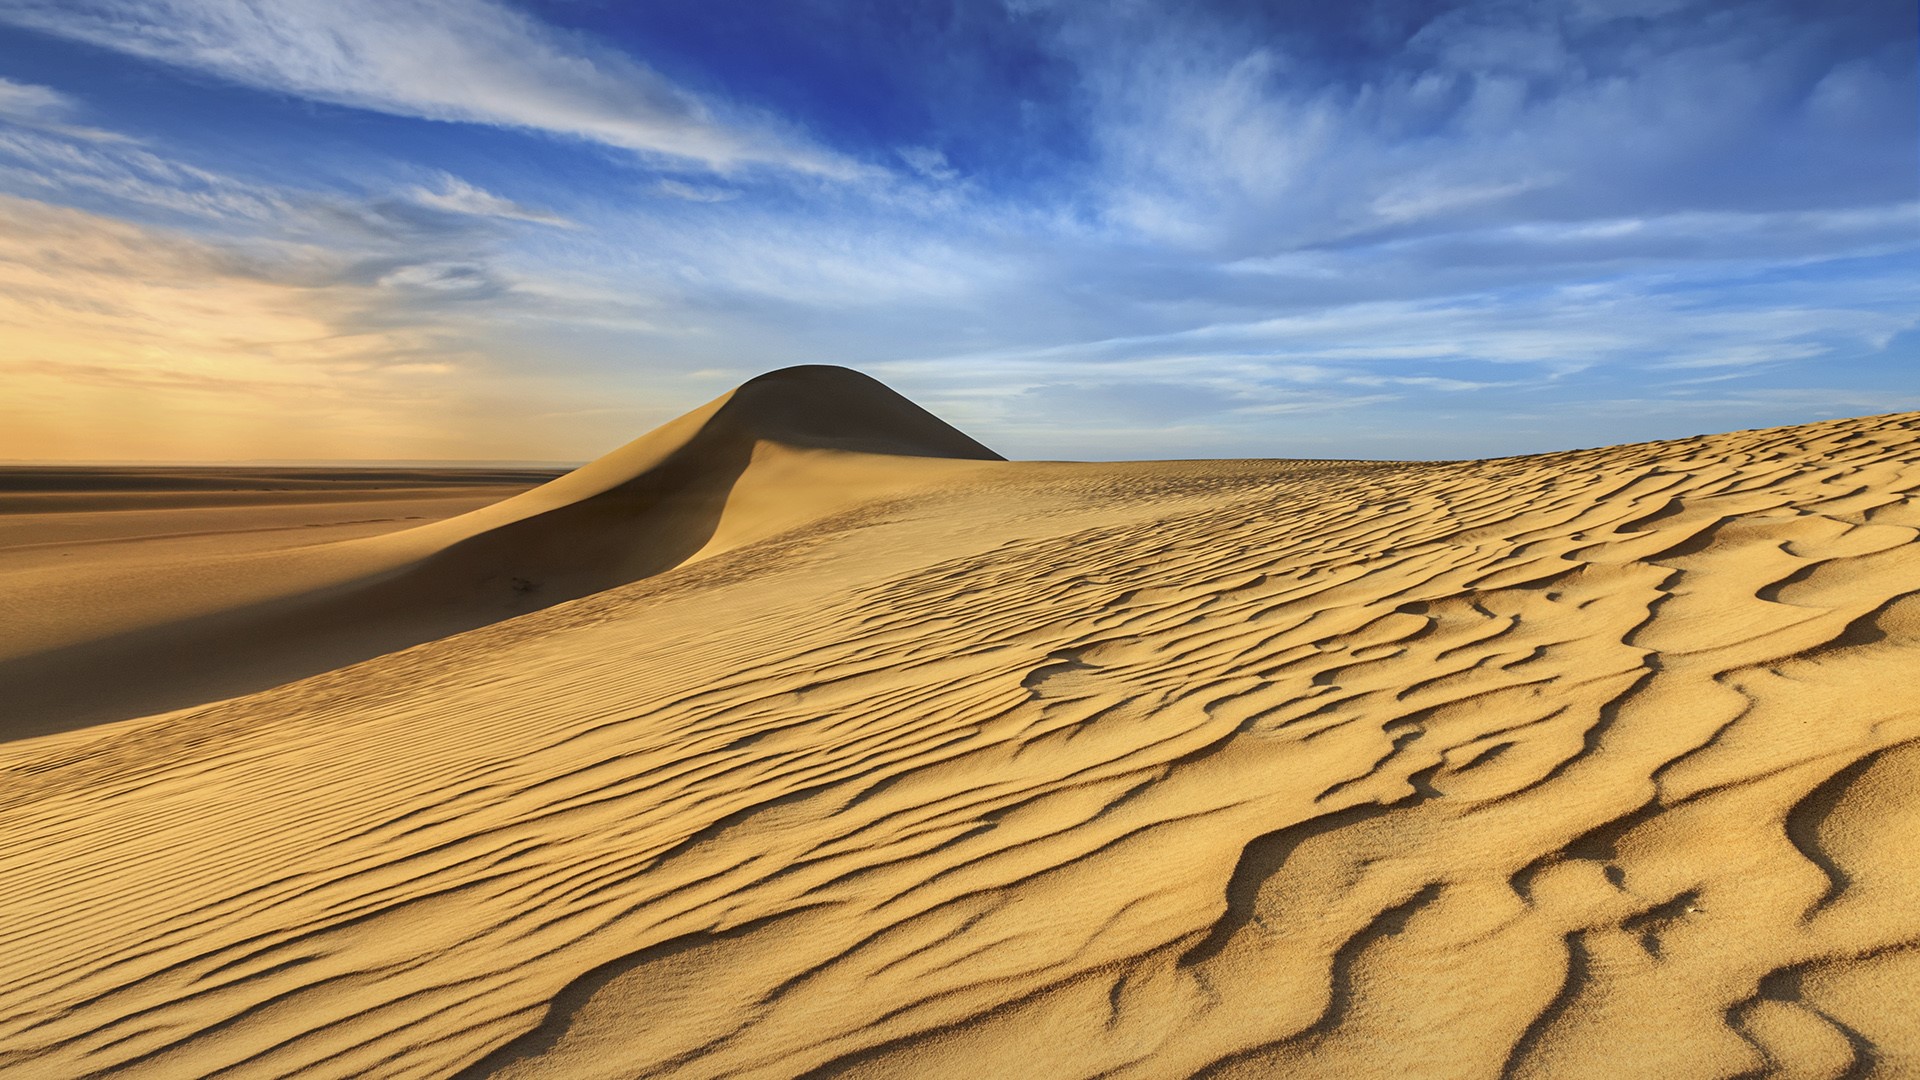 Sunset over the western part of The Sahara Desert in Egypt | Windows ...